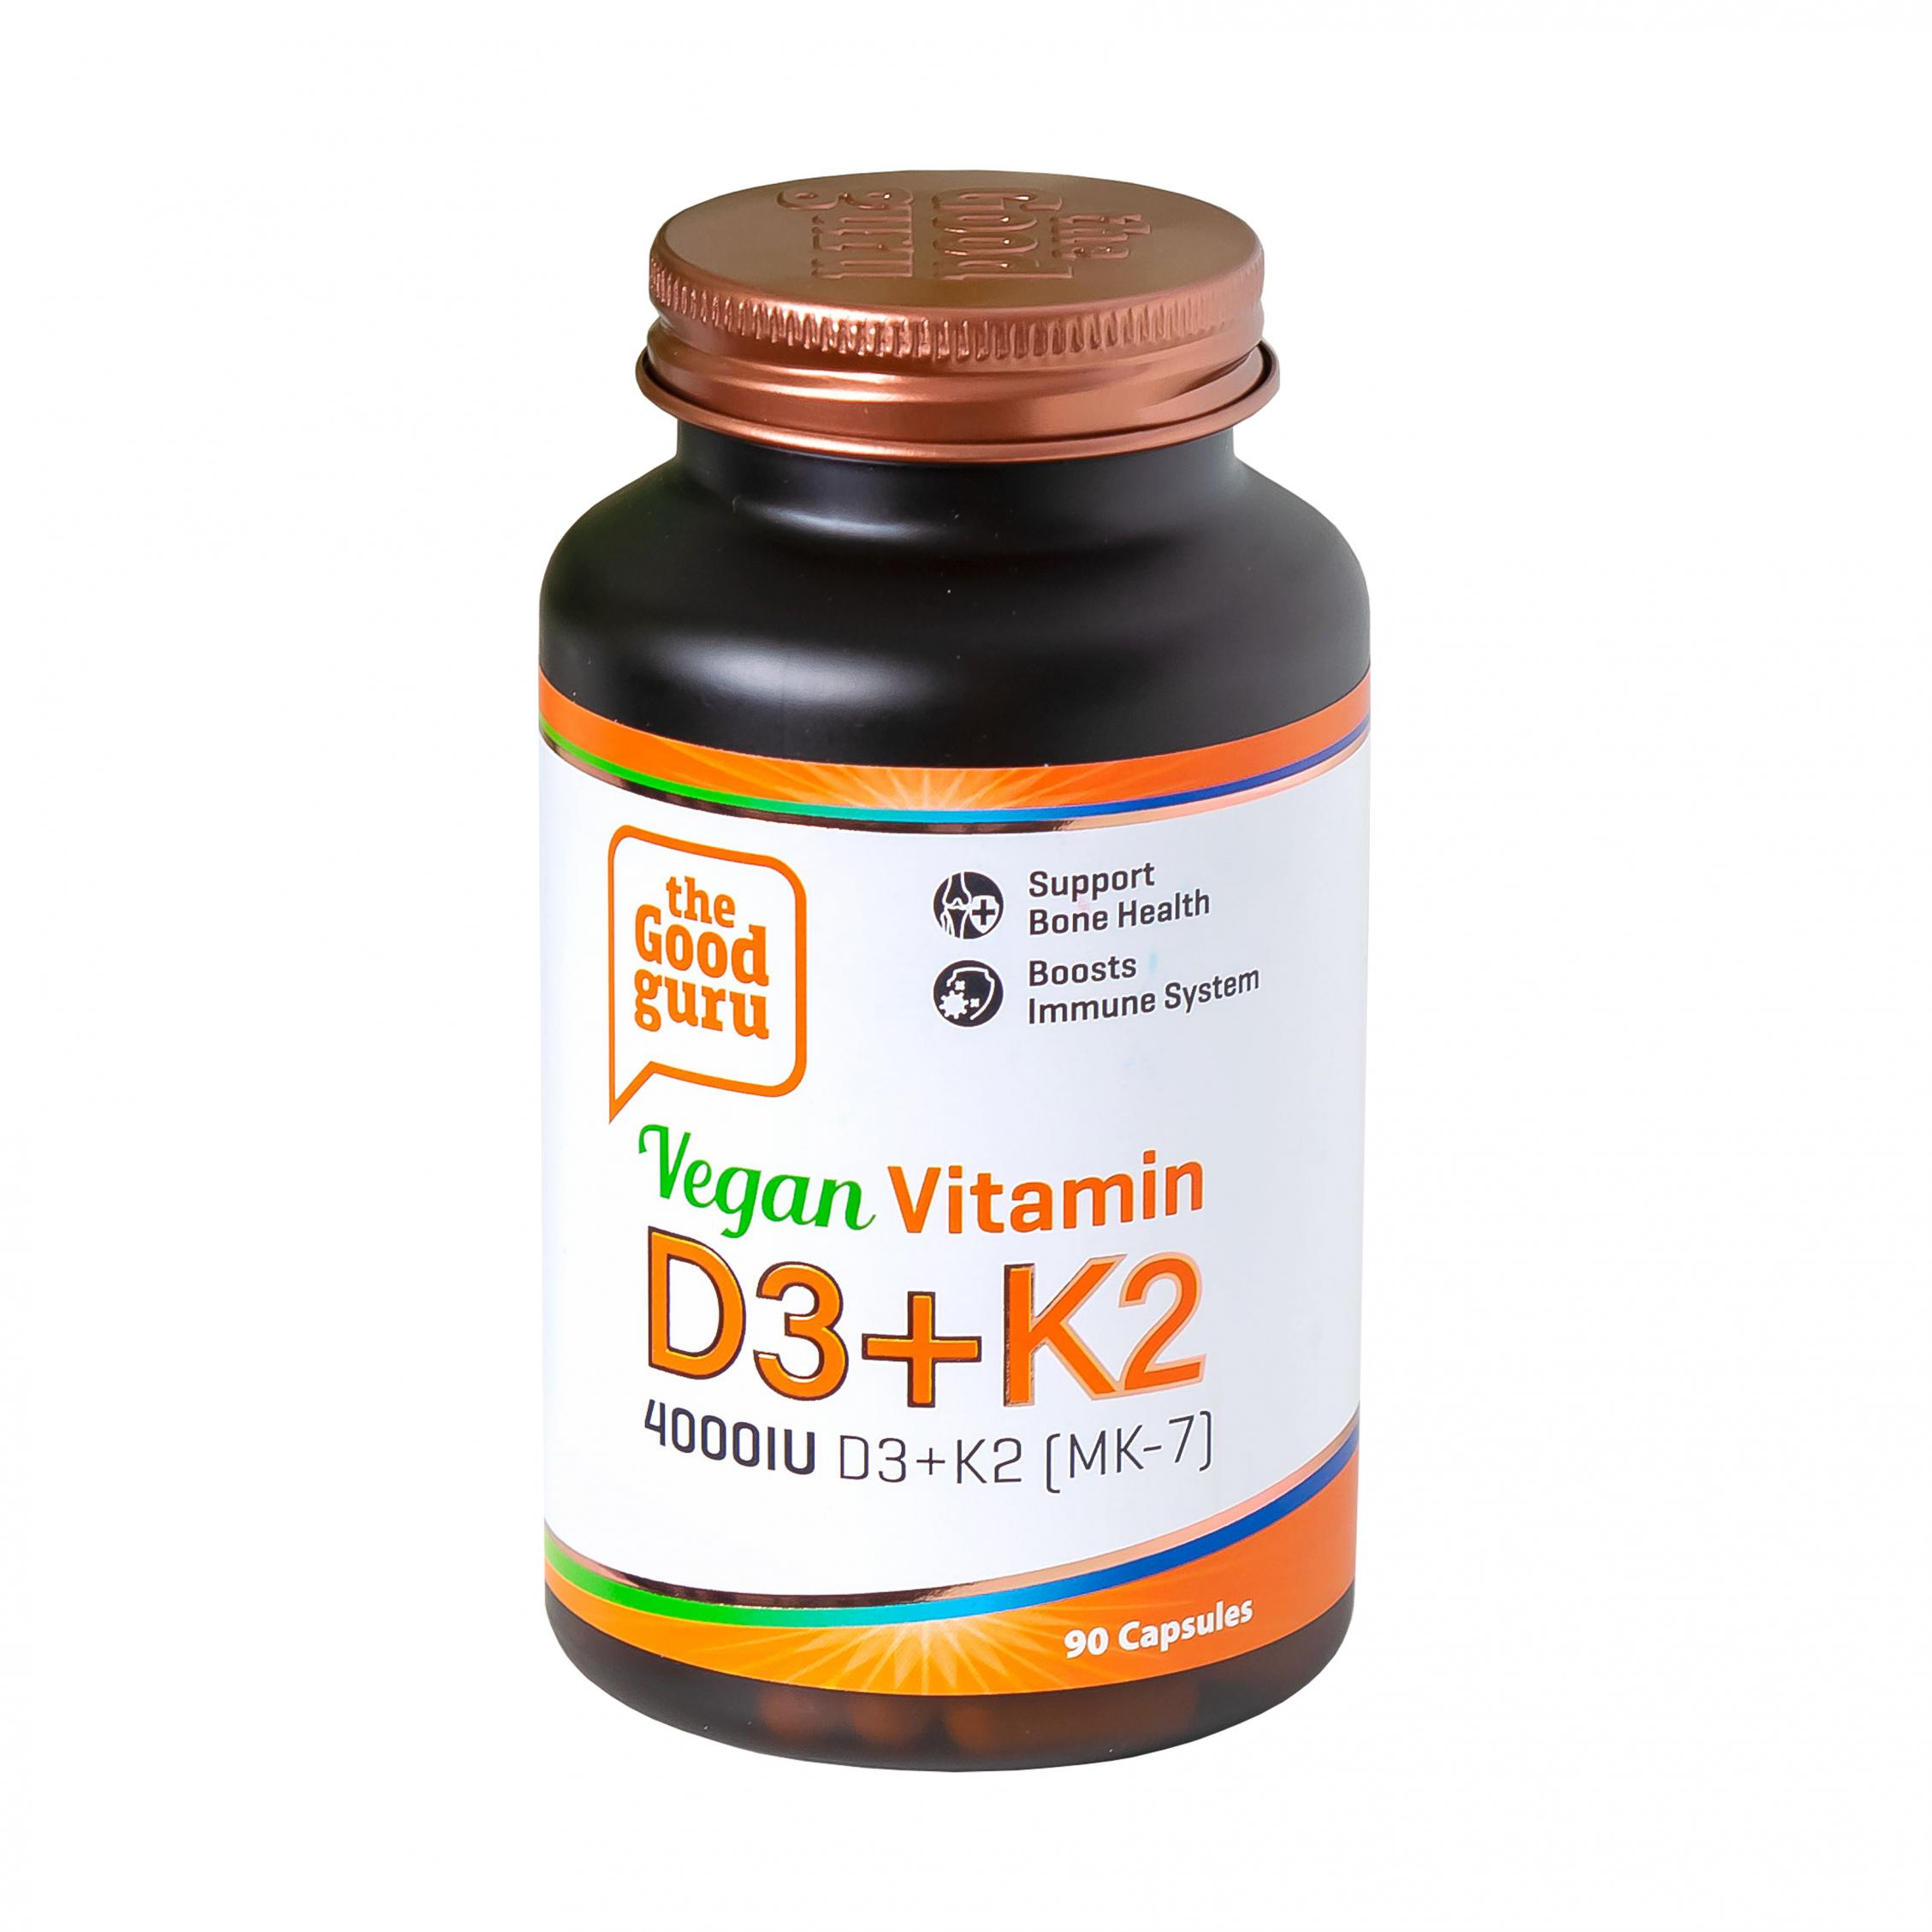 Vegan Vitamin D3+K2 90's